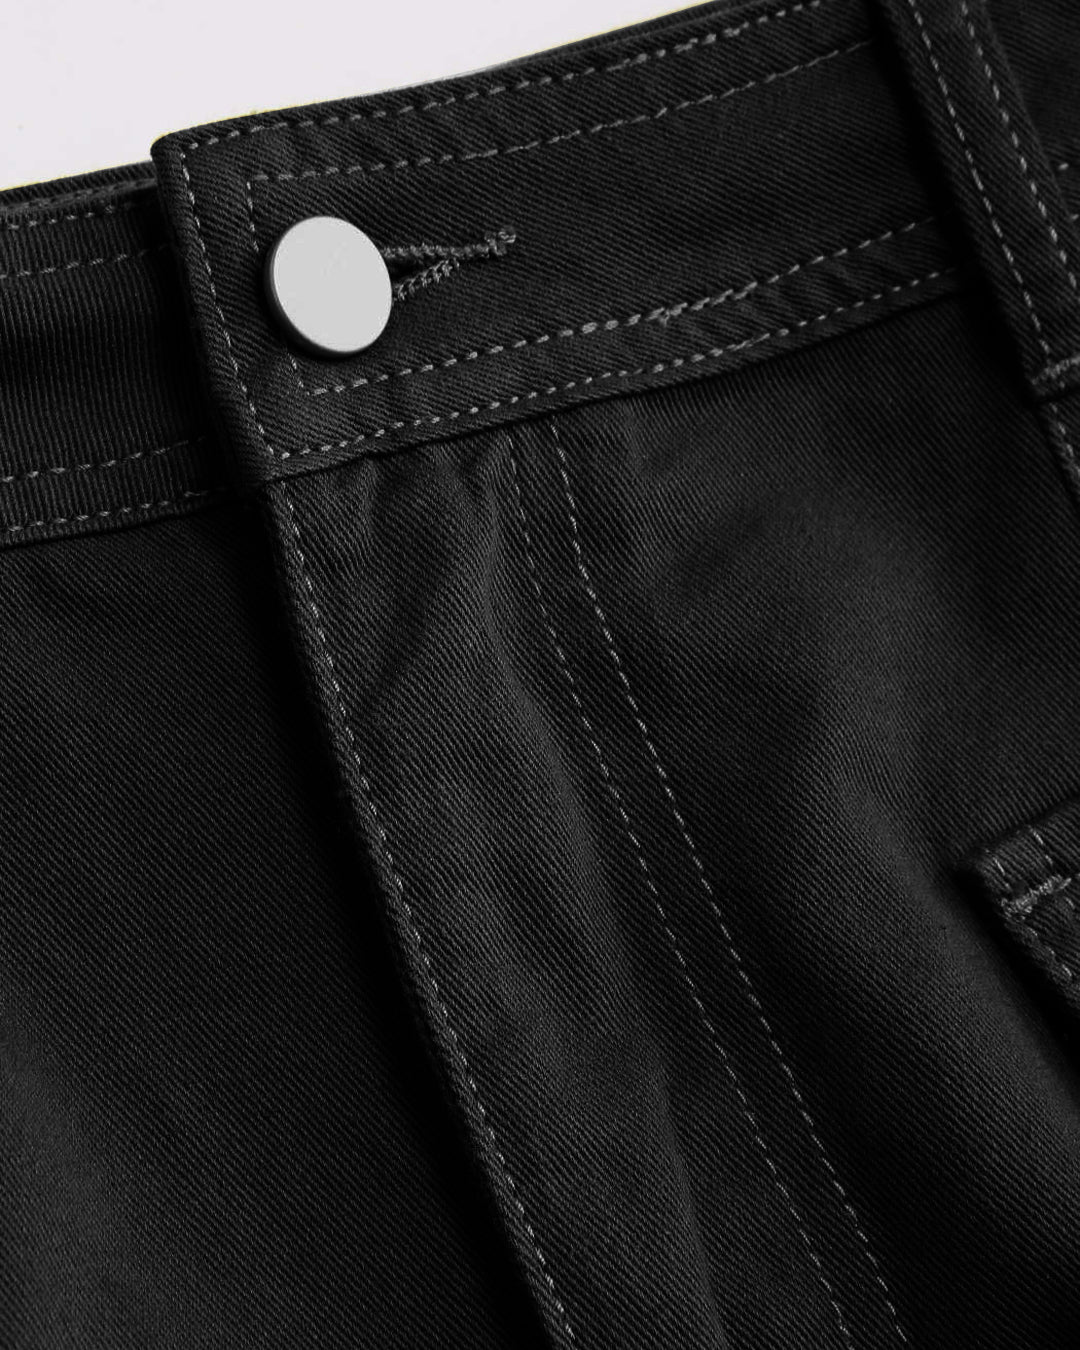 Y2K Trending Utility Skirt In Black – Littlebox India